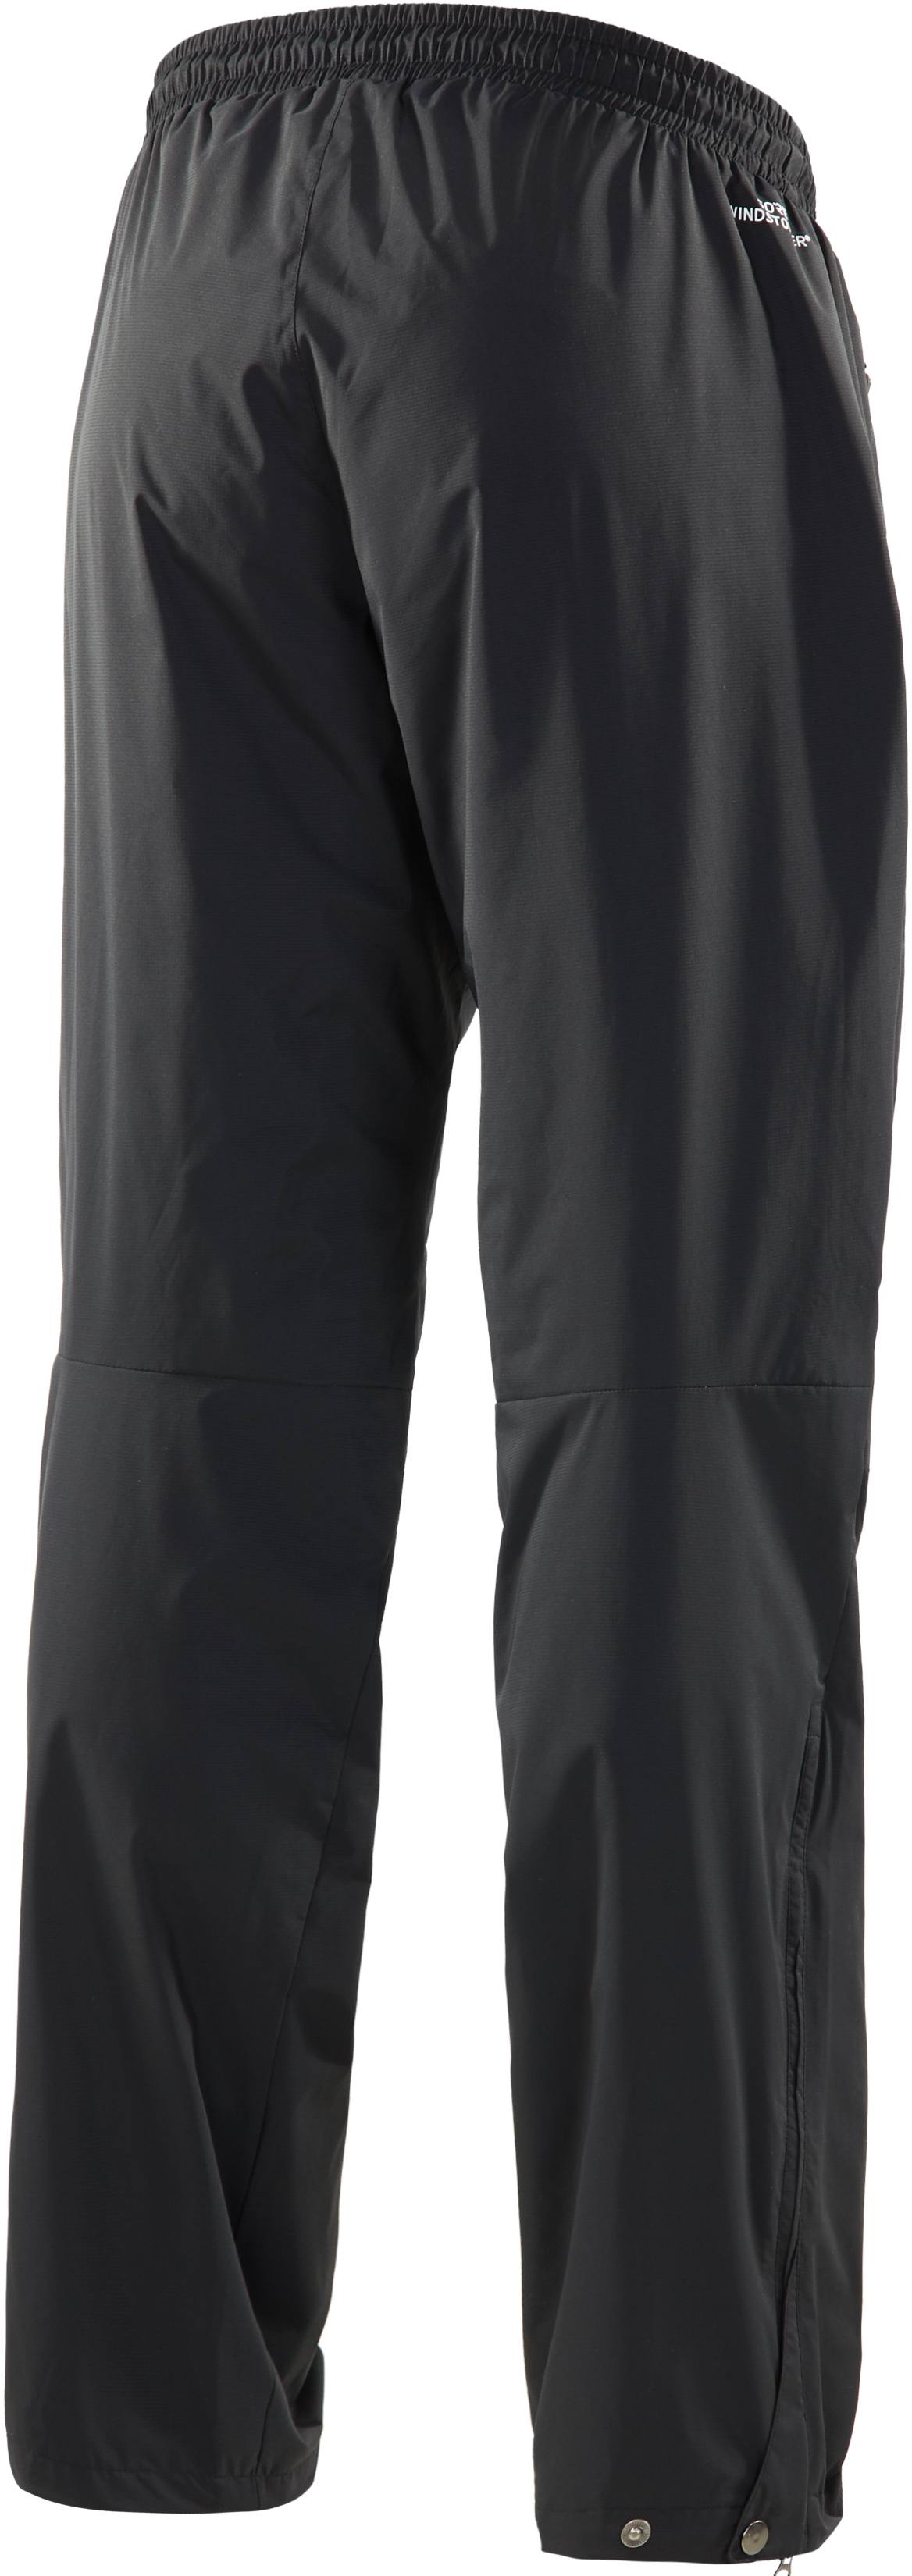 Haglöfs Aero Short Pant Black XL